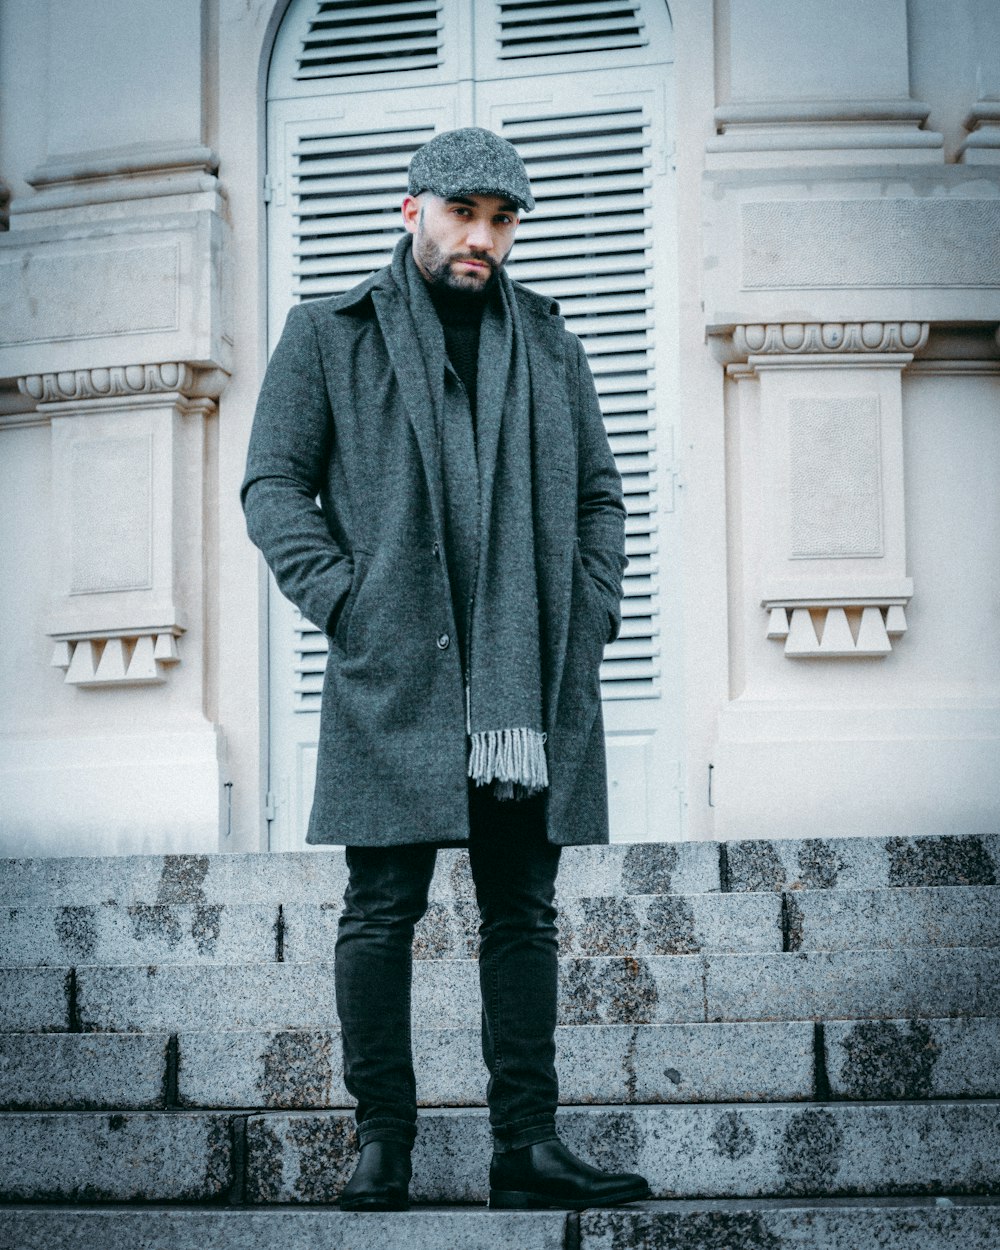 Foto zum Thema Mann im grauen mantel tagsüber auf grauem betonboden –  Kostenloses Bild zu Grau auf Unsplash